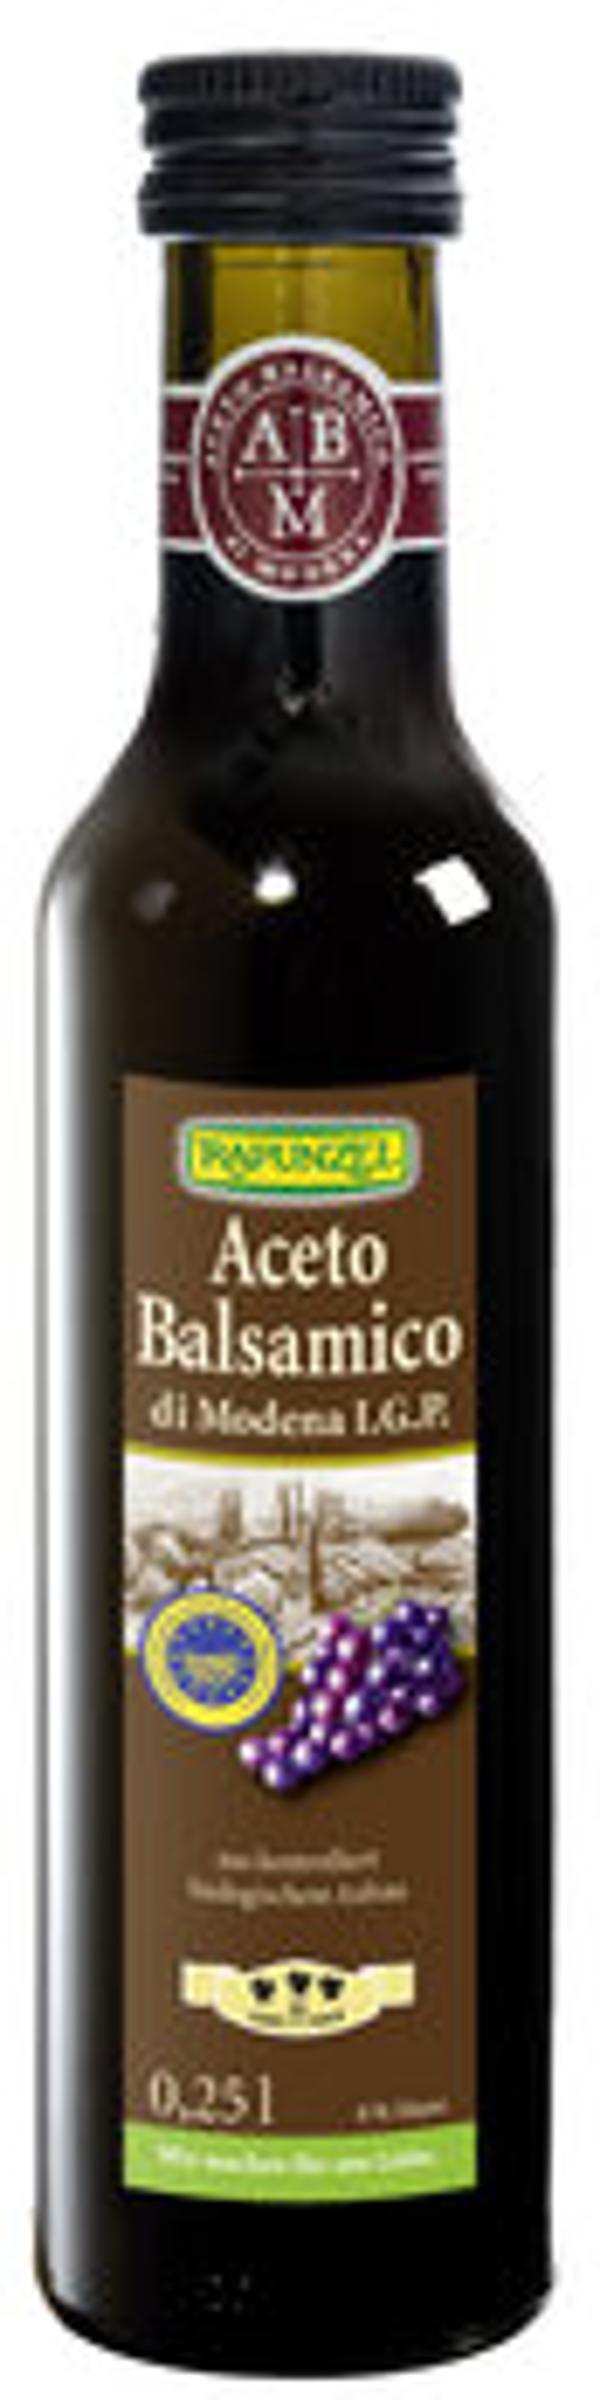 Produktfoto zu Aceto Balsamico di Modena IGP, 250ml, Rapunzel